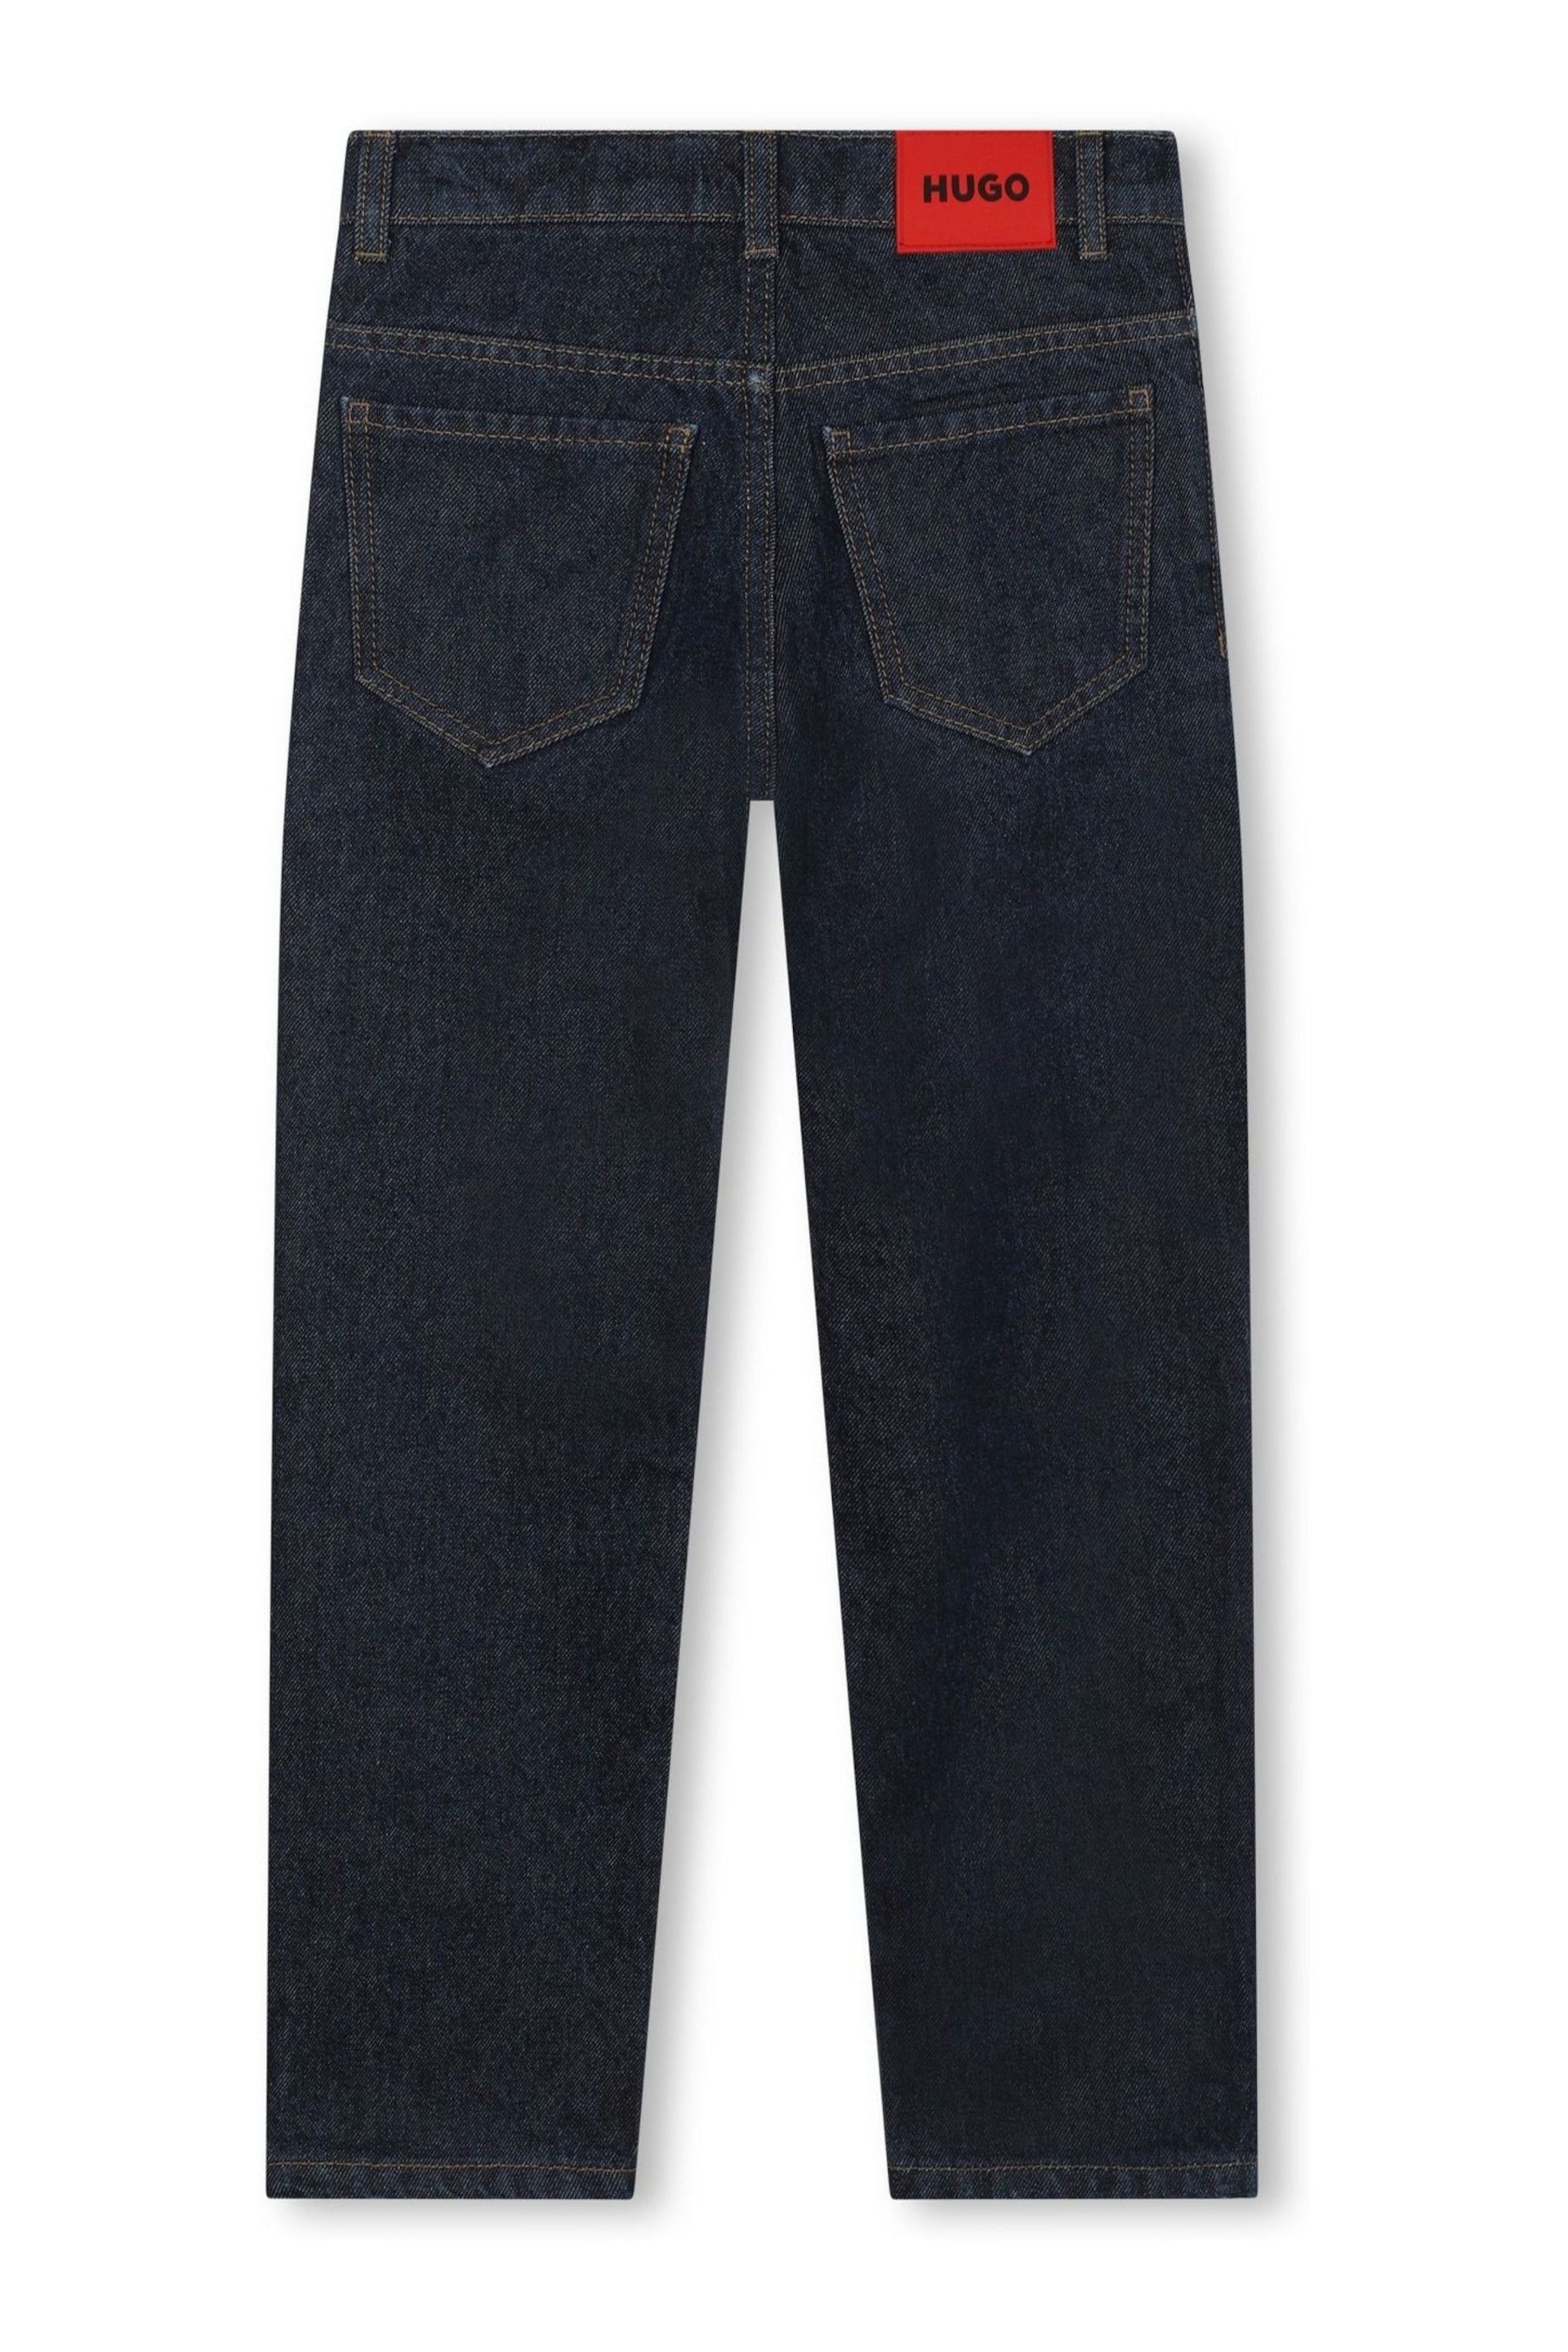 HUGO Blue Denim Jeans - Image 2 of 3